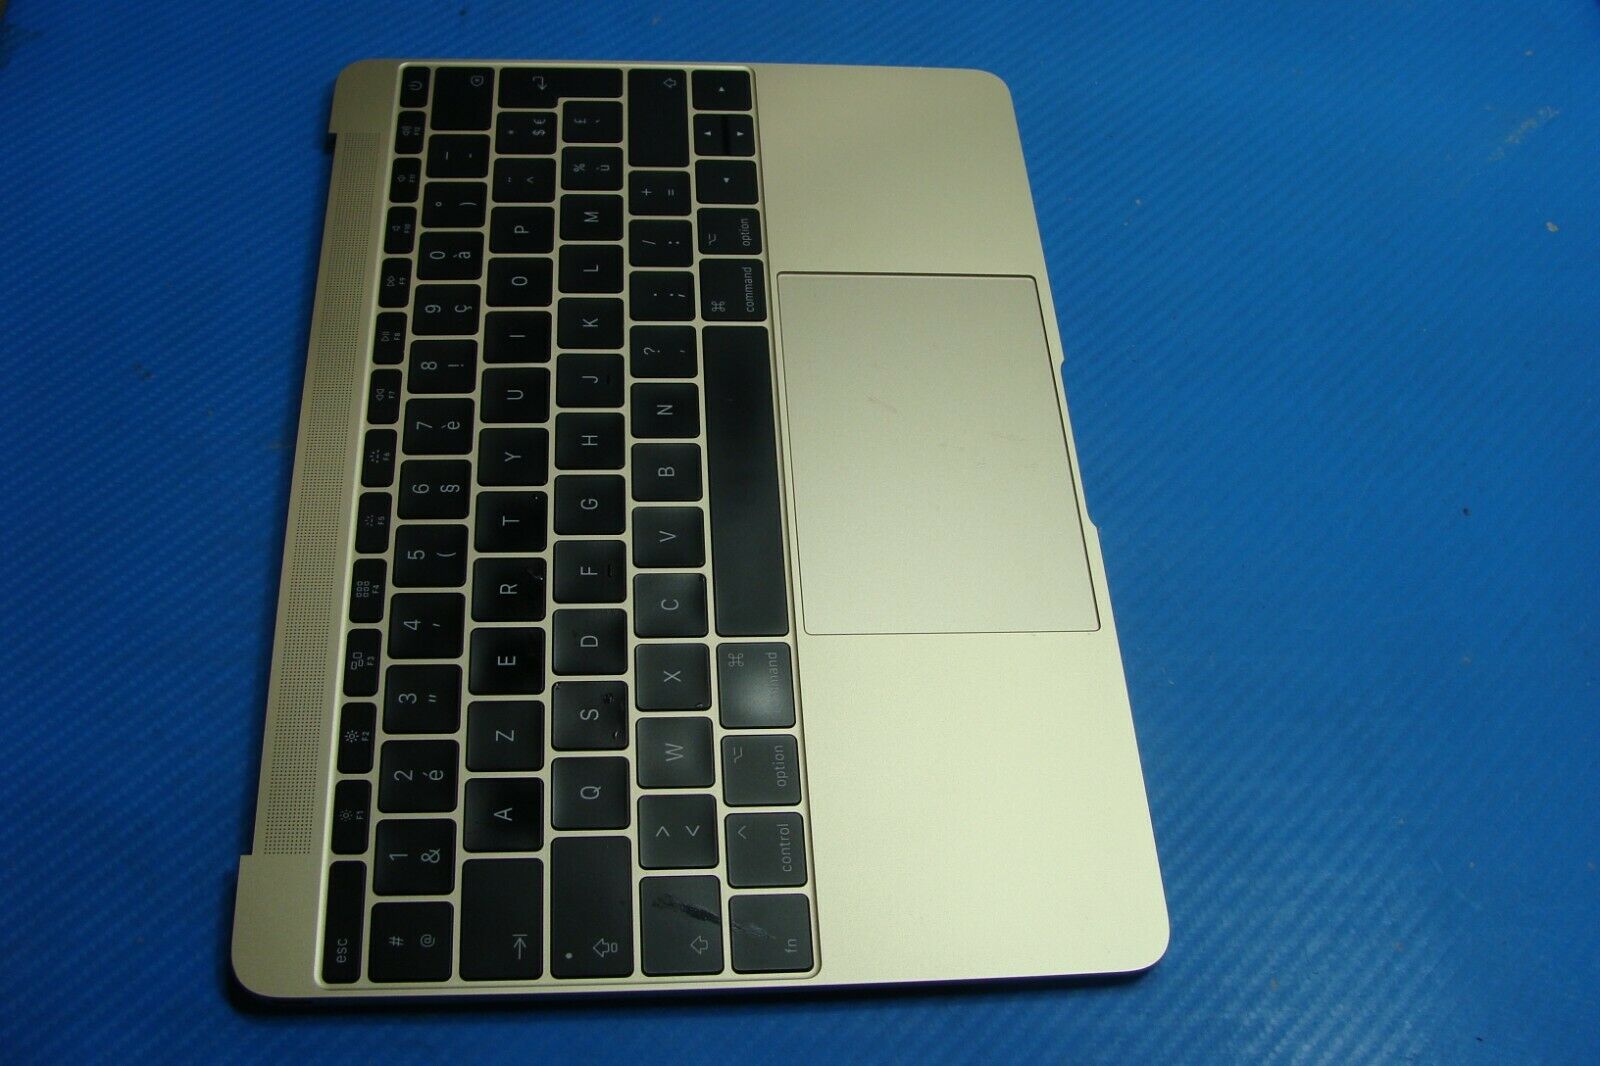 MacBook 12